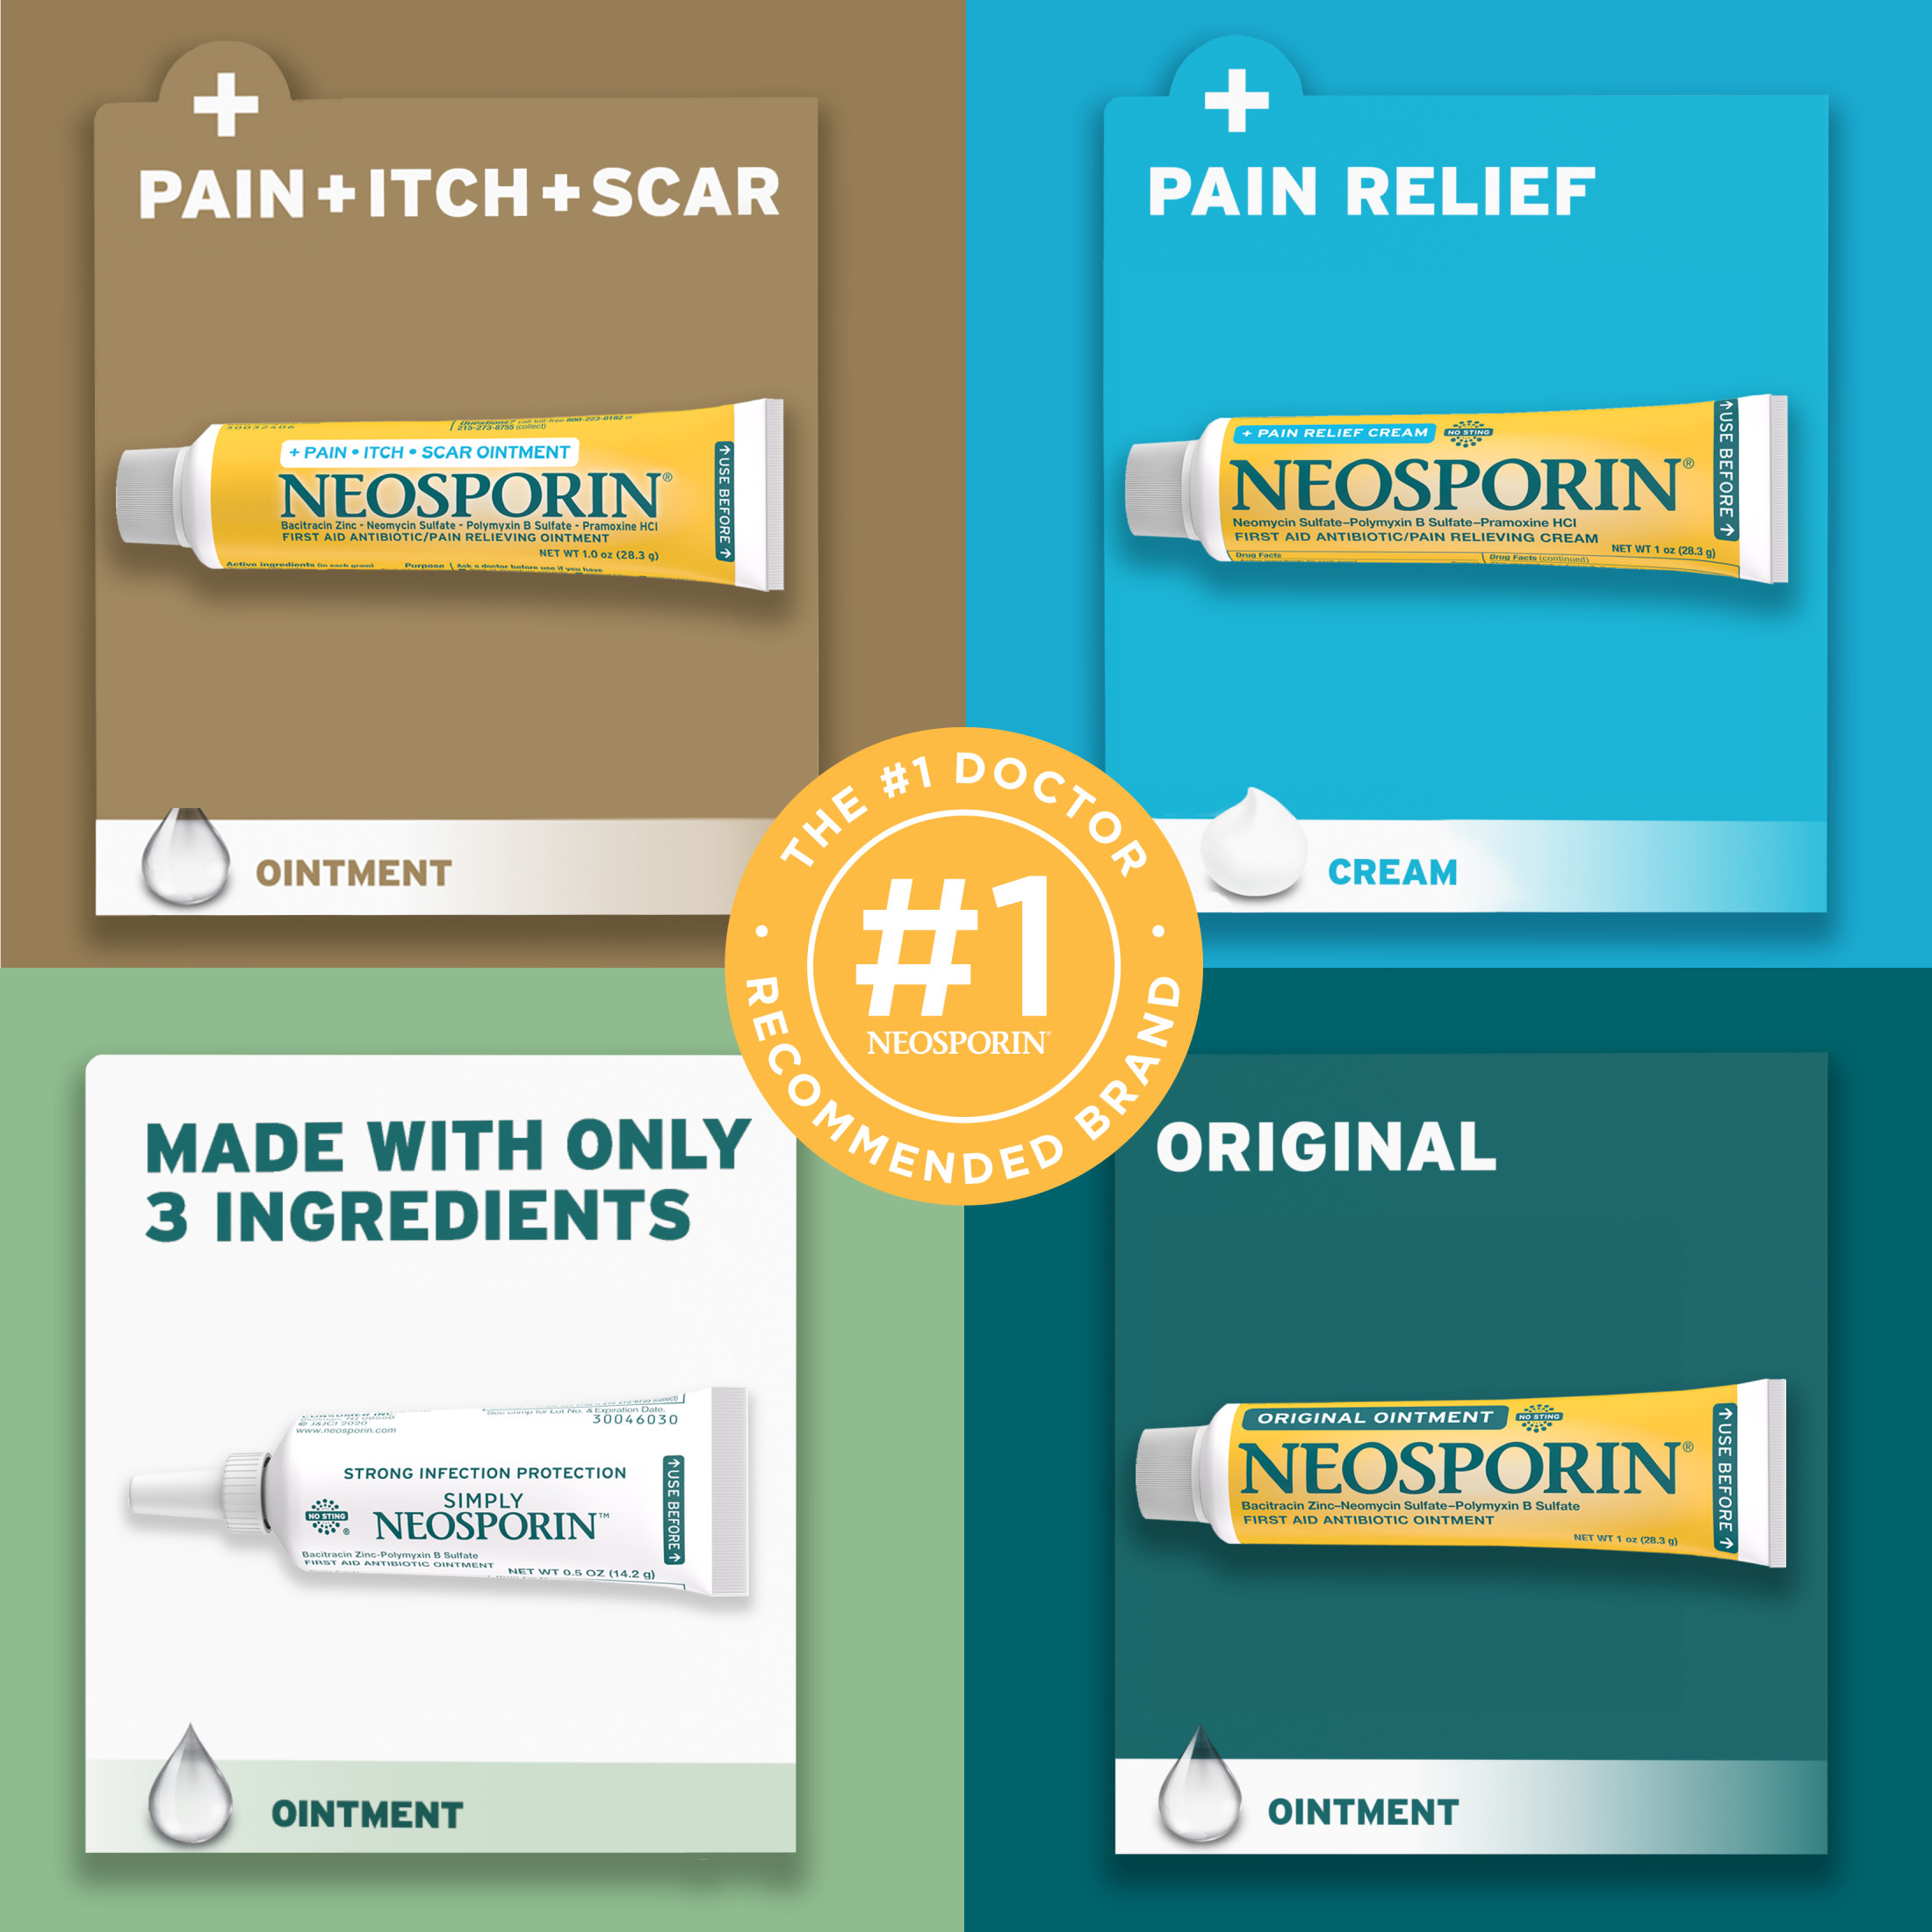 Neosporin + Pain Relief Dual Action First Aid Antibiotic Cream, 1 oz - image 5 of 17